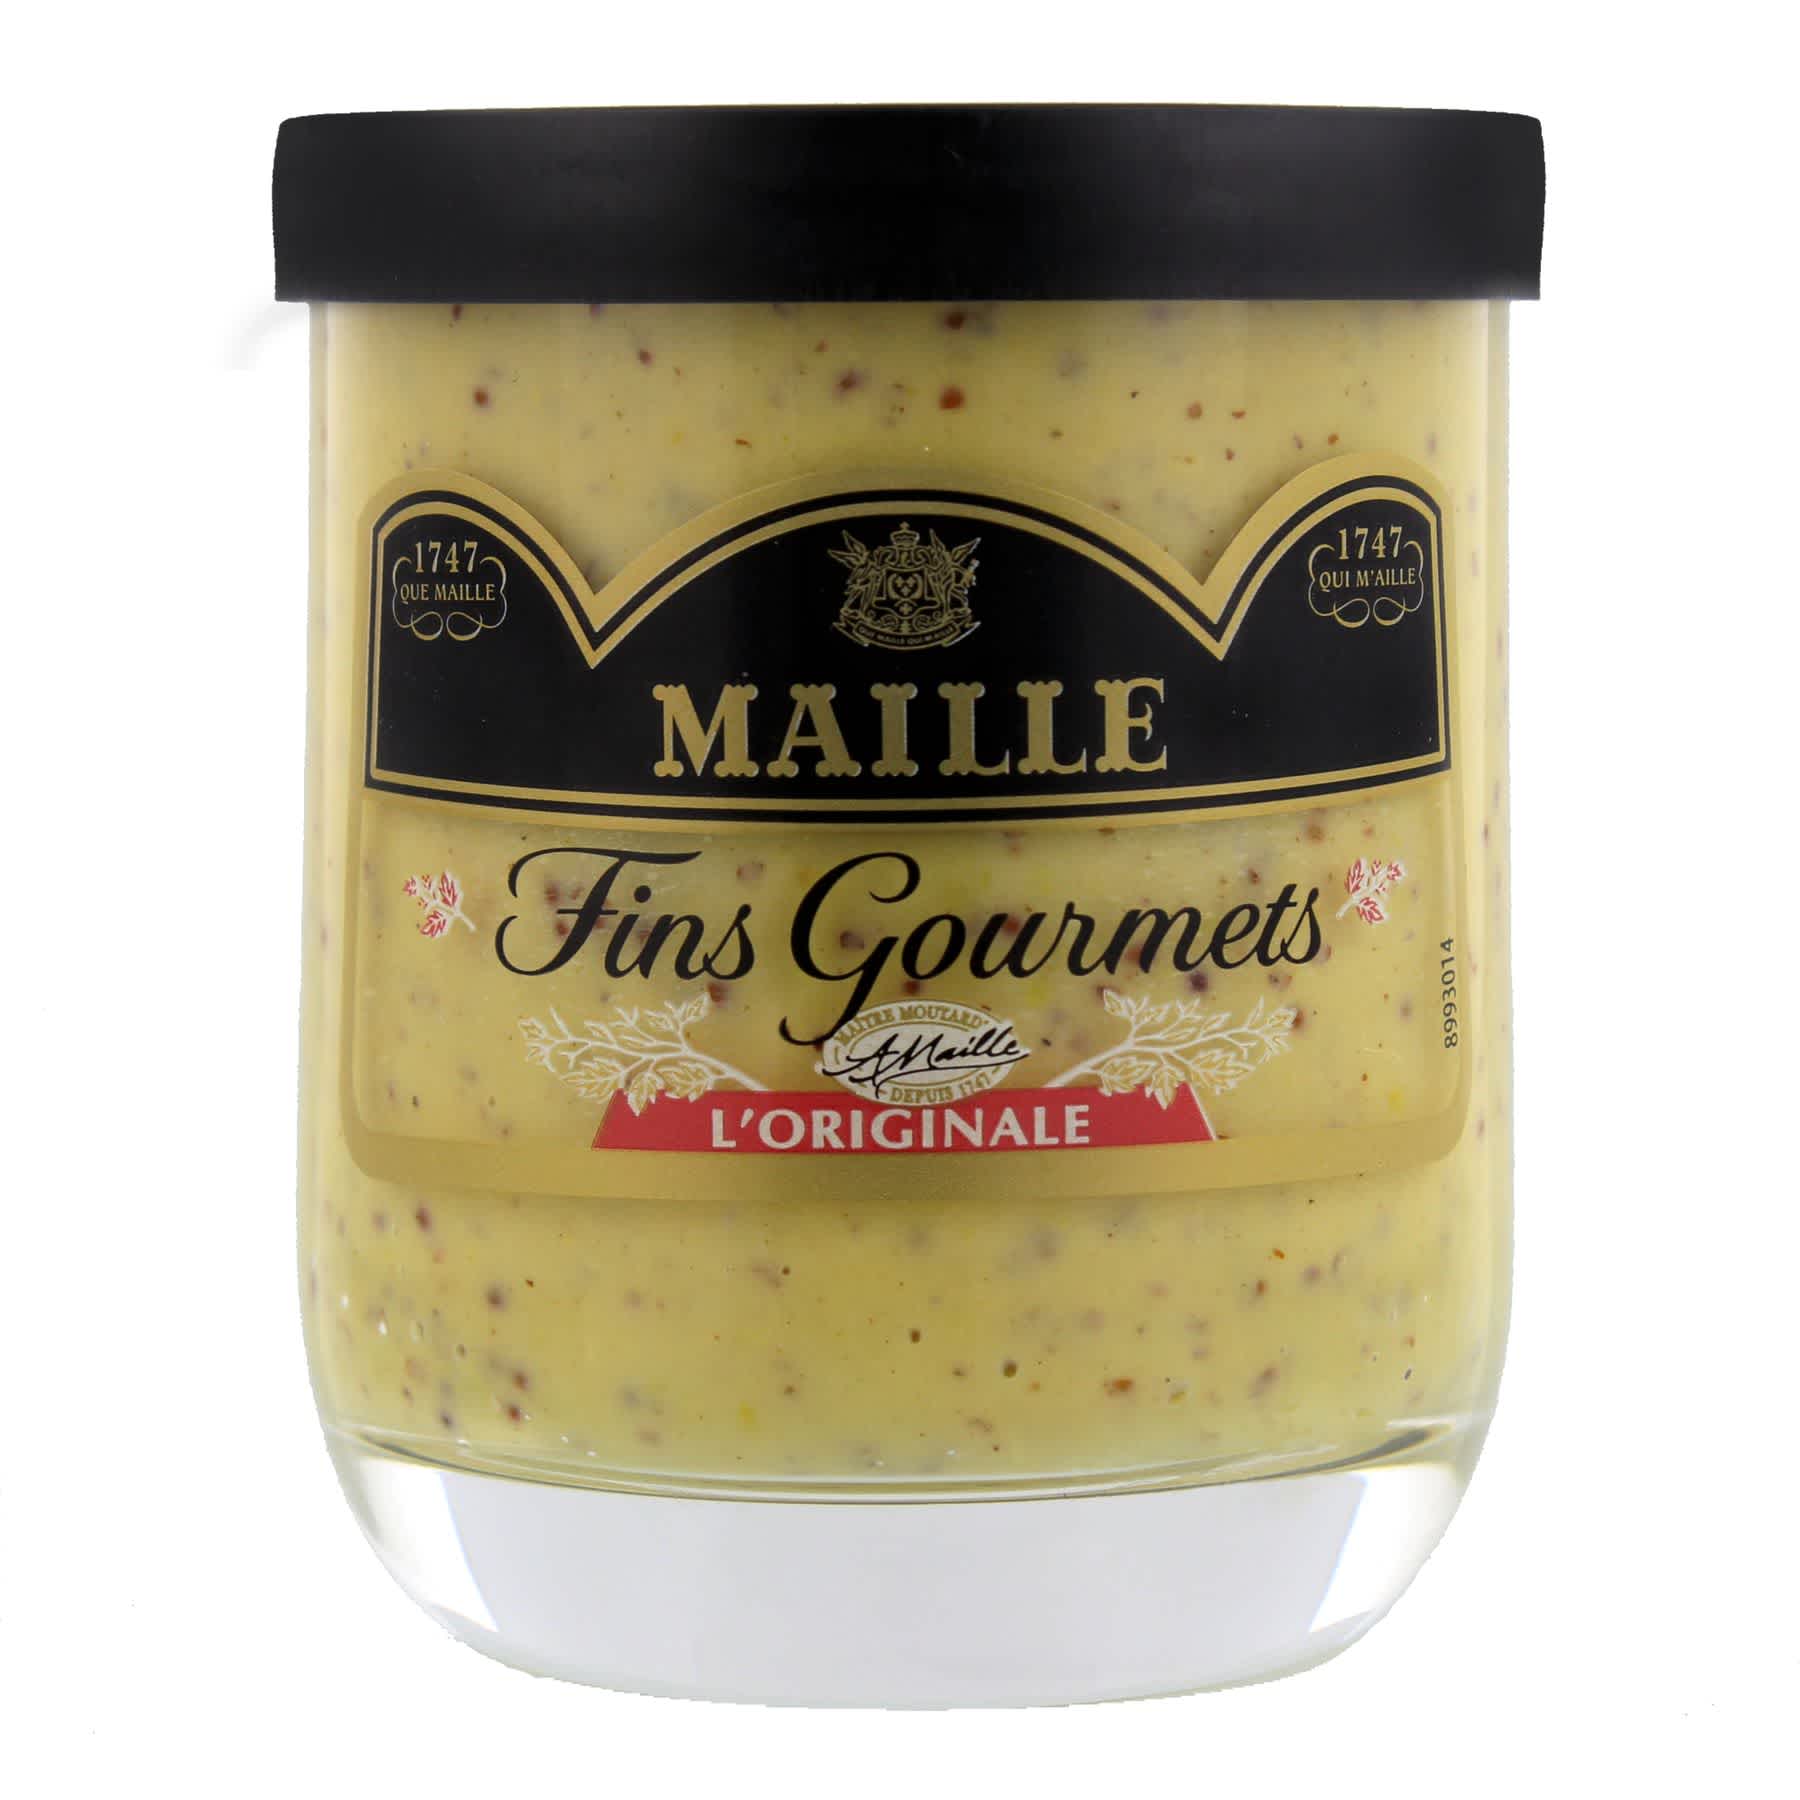 Maille - Fins Gourmets l’Originale spécialité aux deux moutardes et au vin blanc verrine 155 g, overview